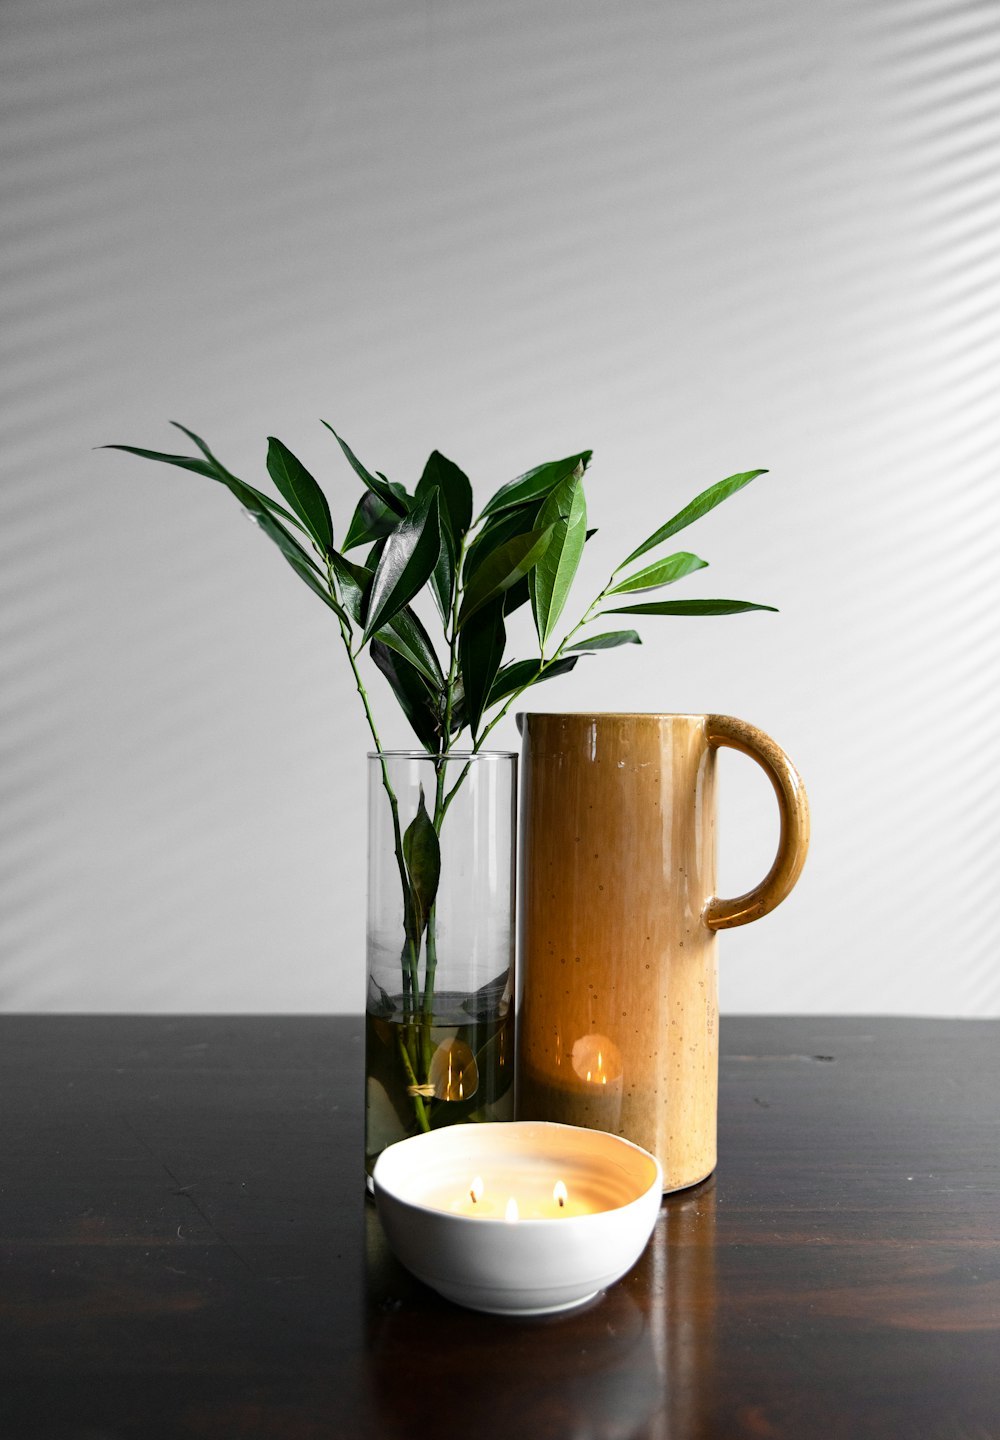 brocca marrone accanto alla pianta in vaso